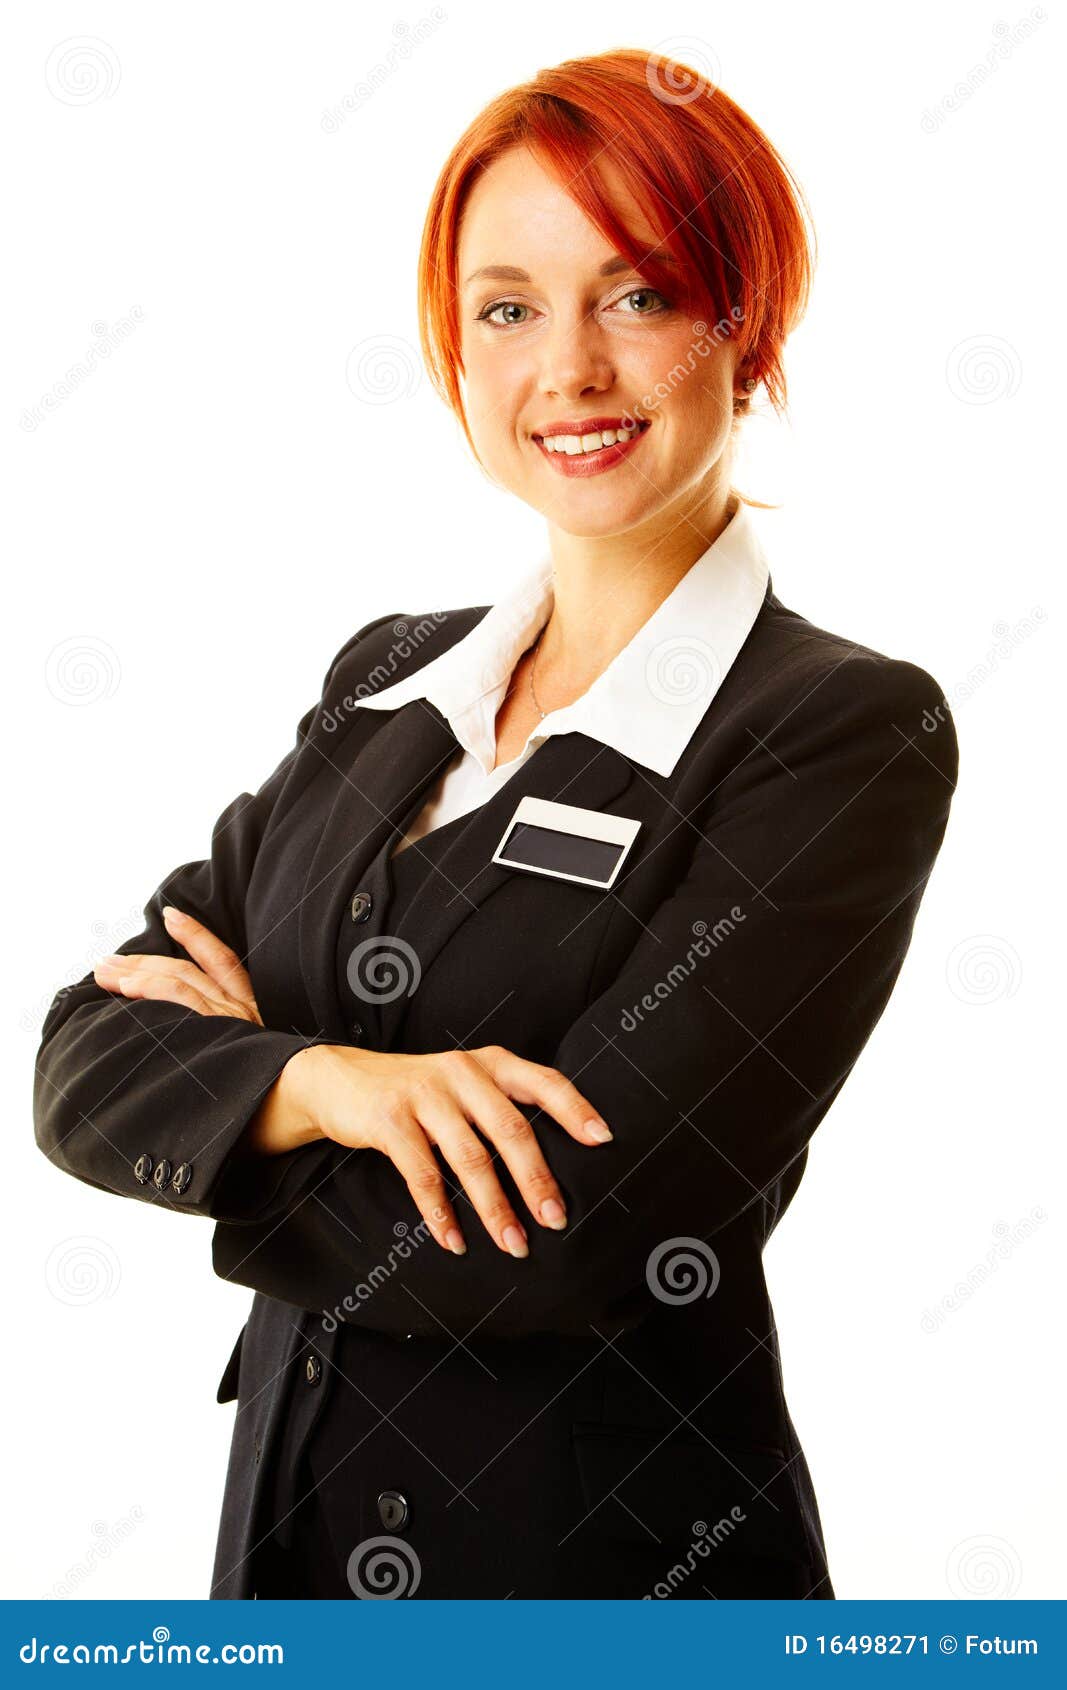 caucasian woman as hotel worker